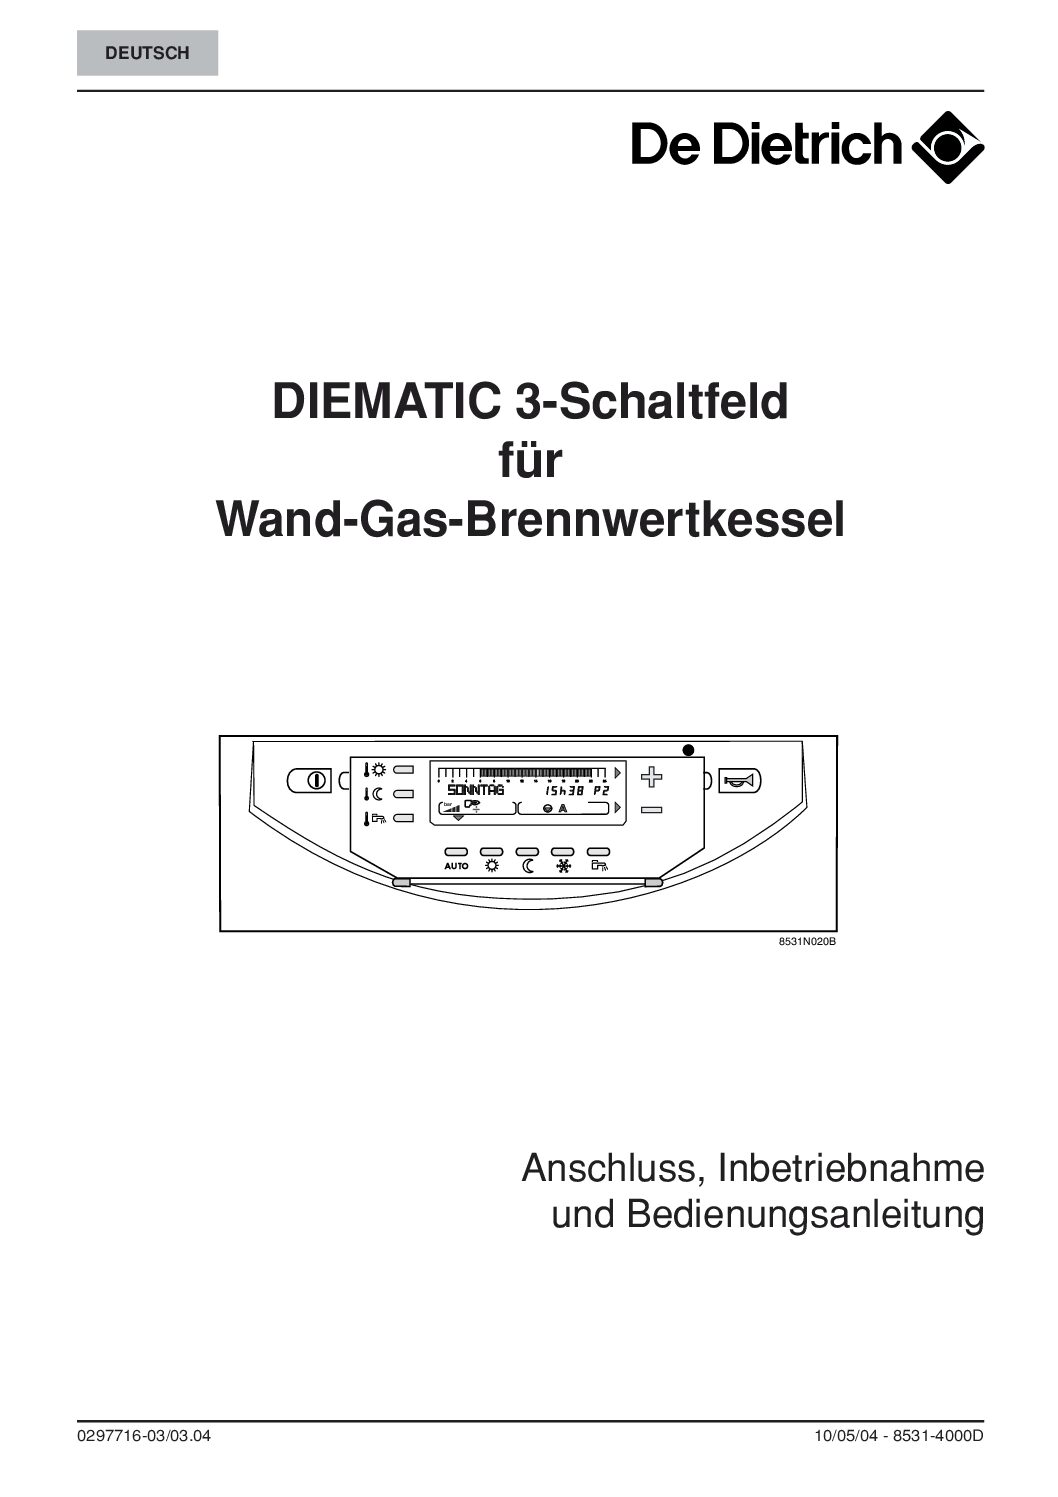 De Dietrich DIEMATIC 3-Schaltfeld Bedienungsanleitung